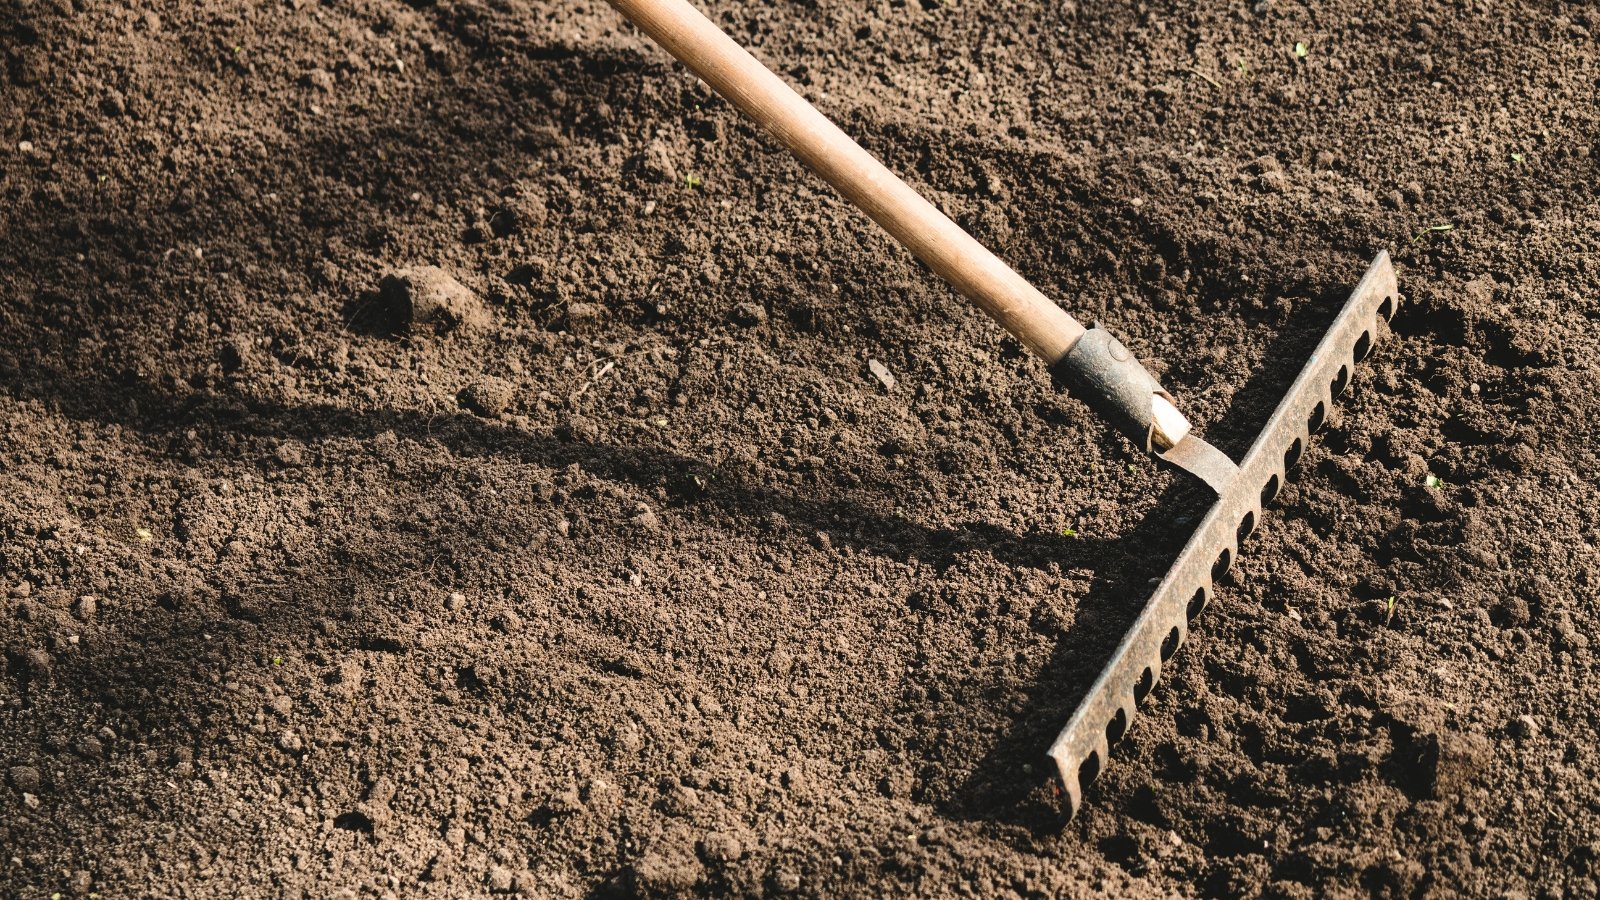 Close-up of preparing soil with a garden rake in a sunny garden.